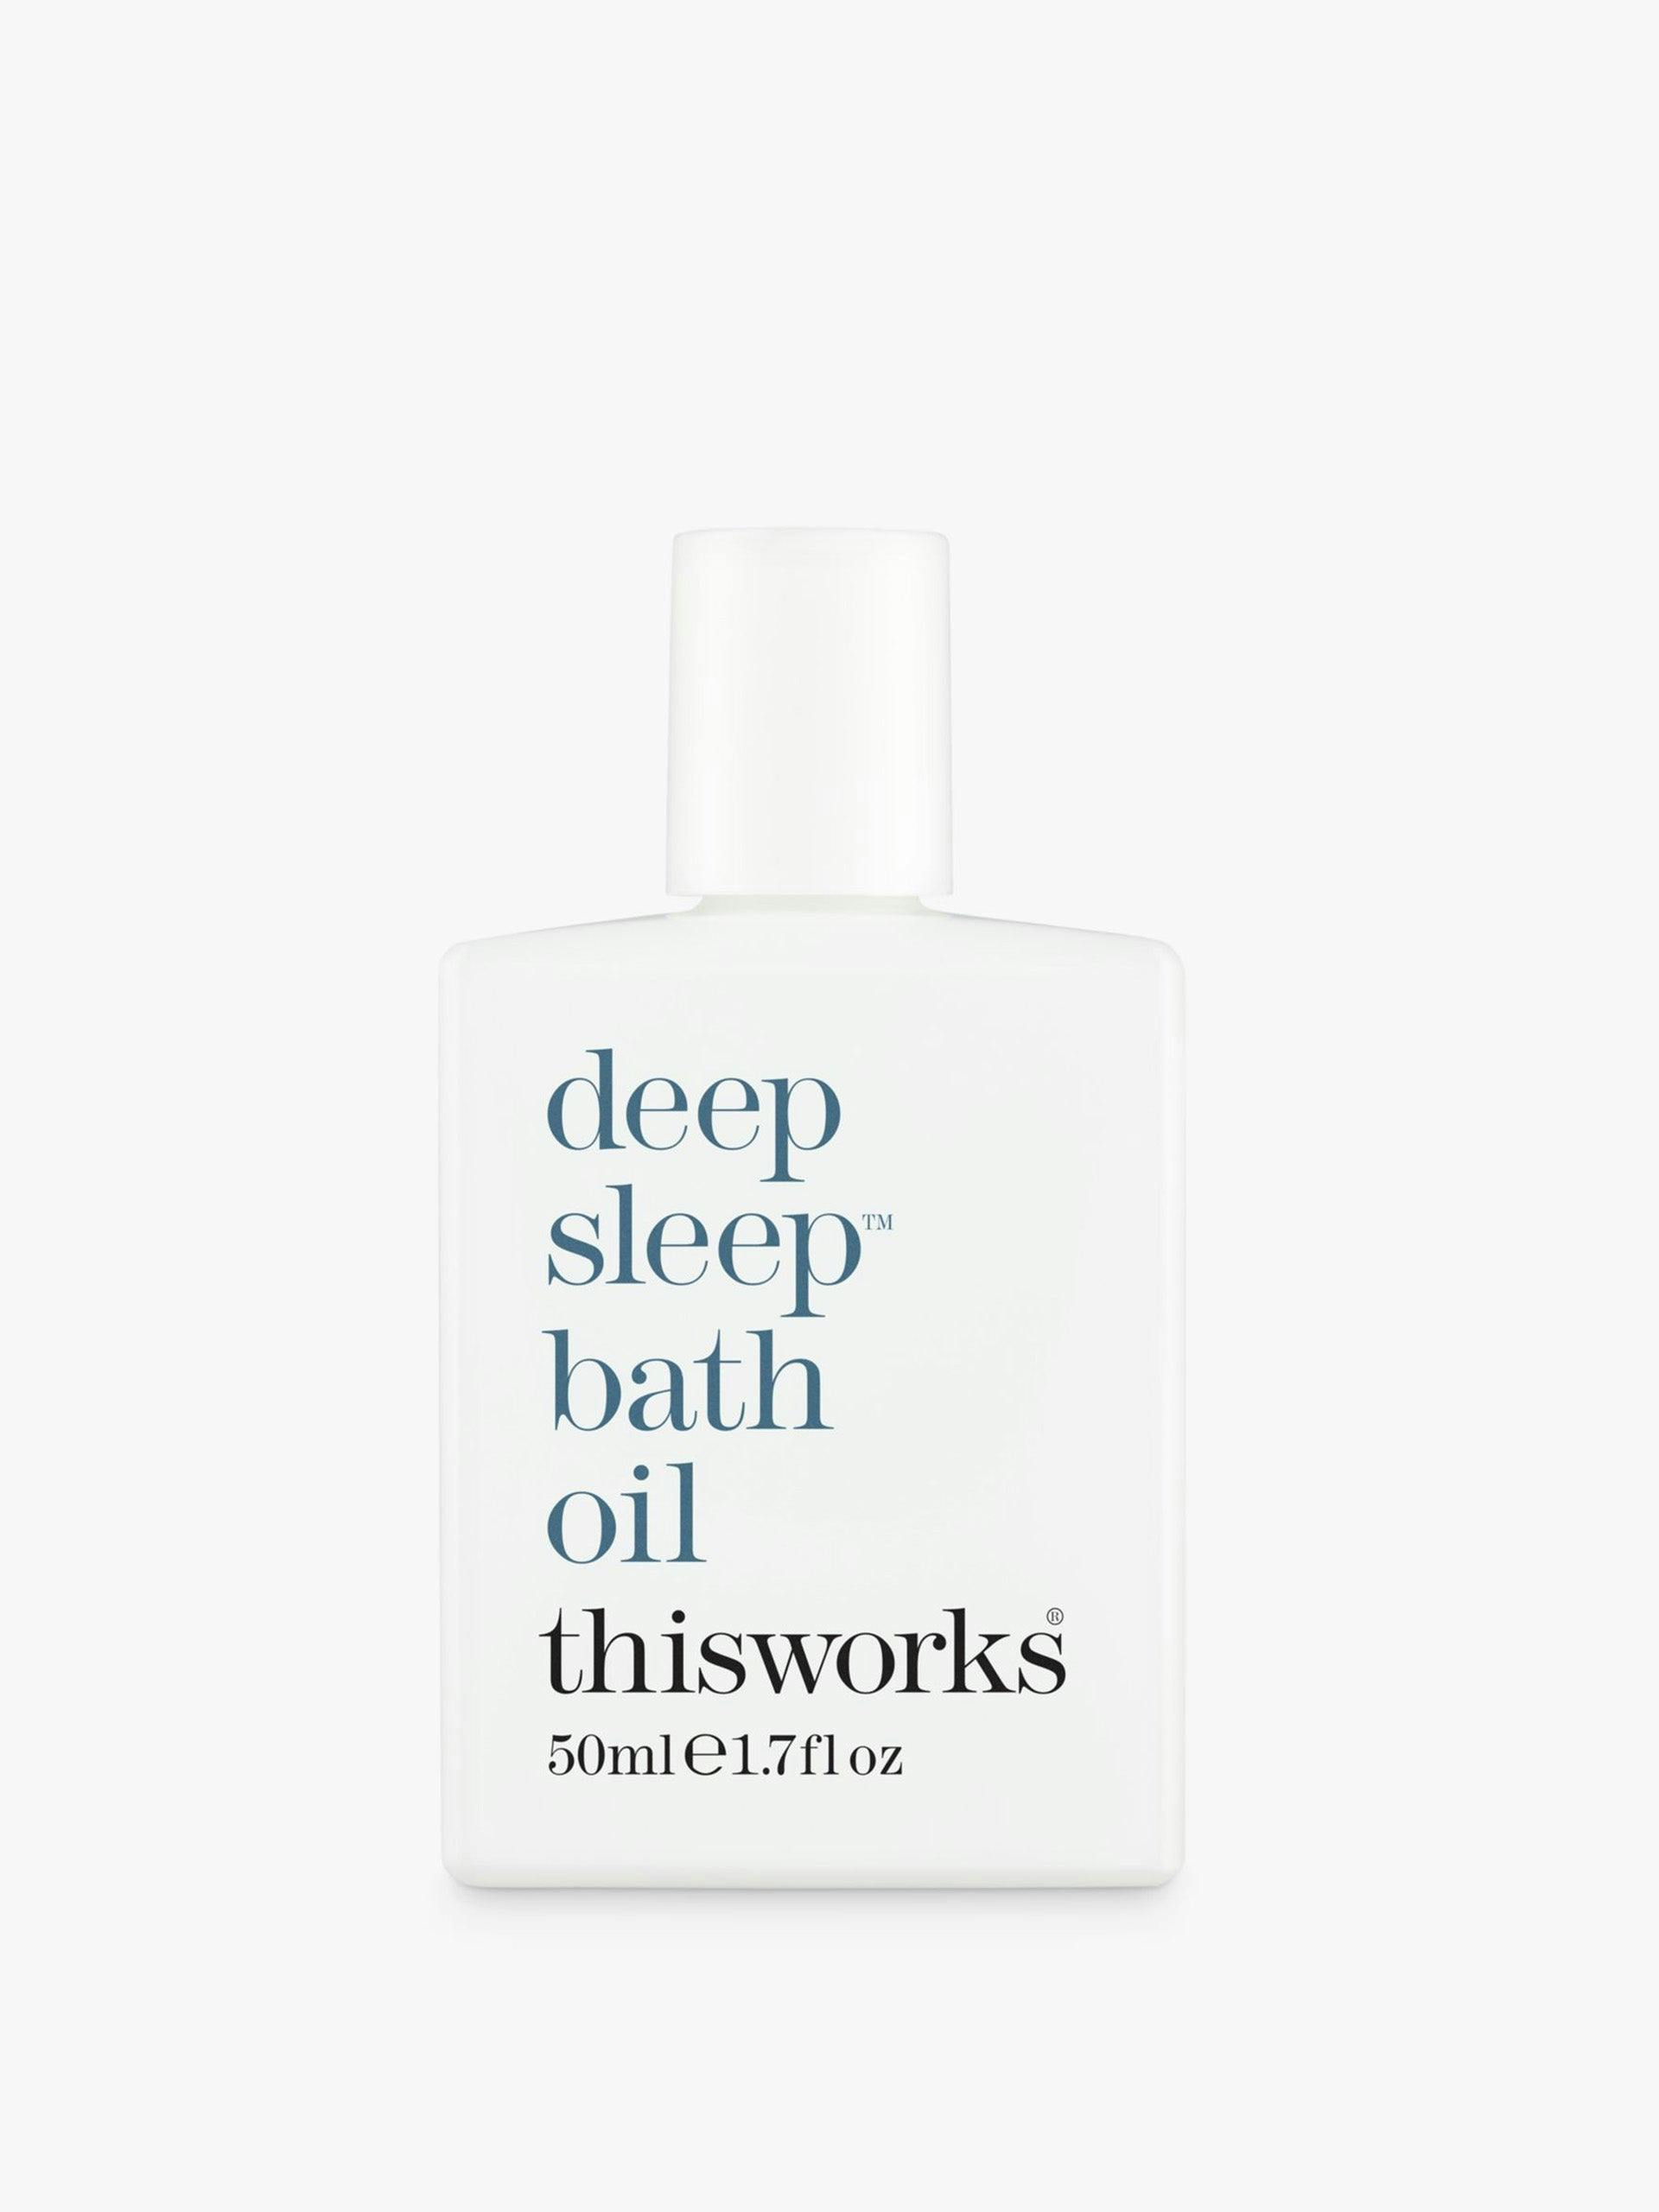 Deep sleep bath oil